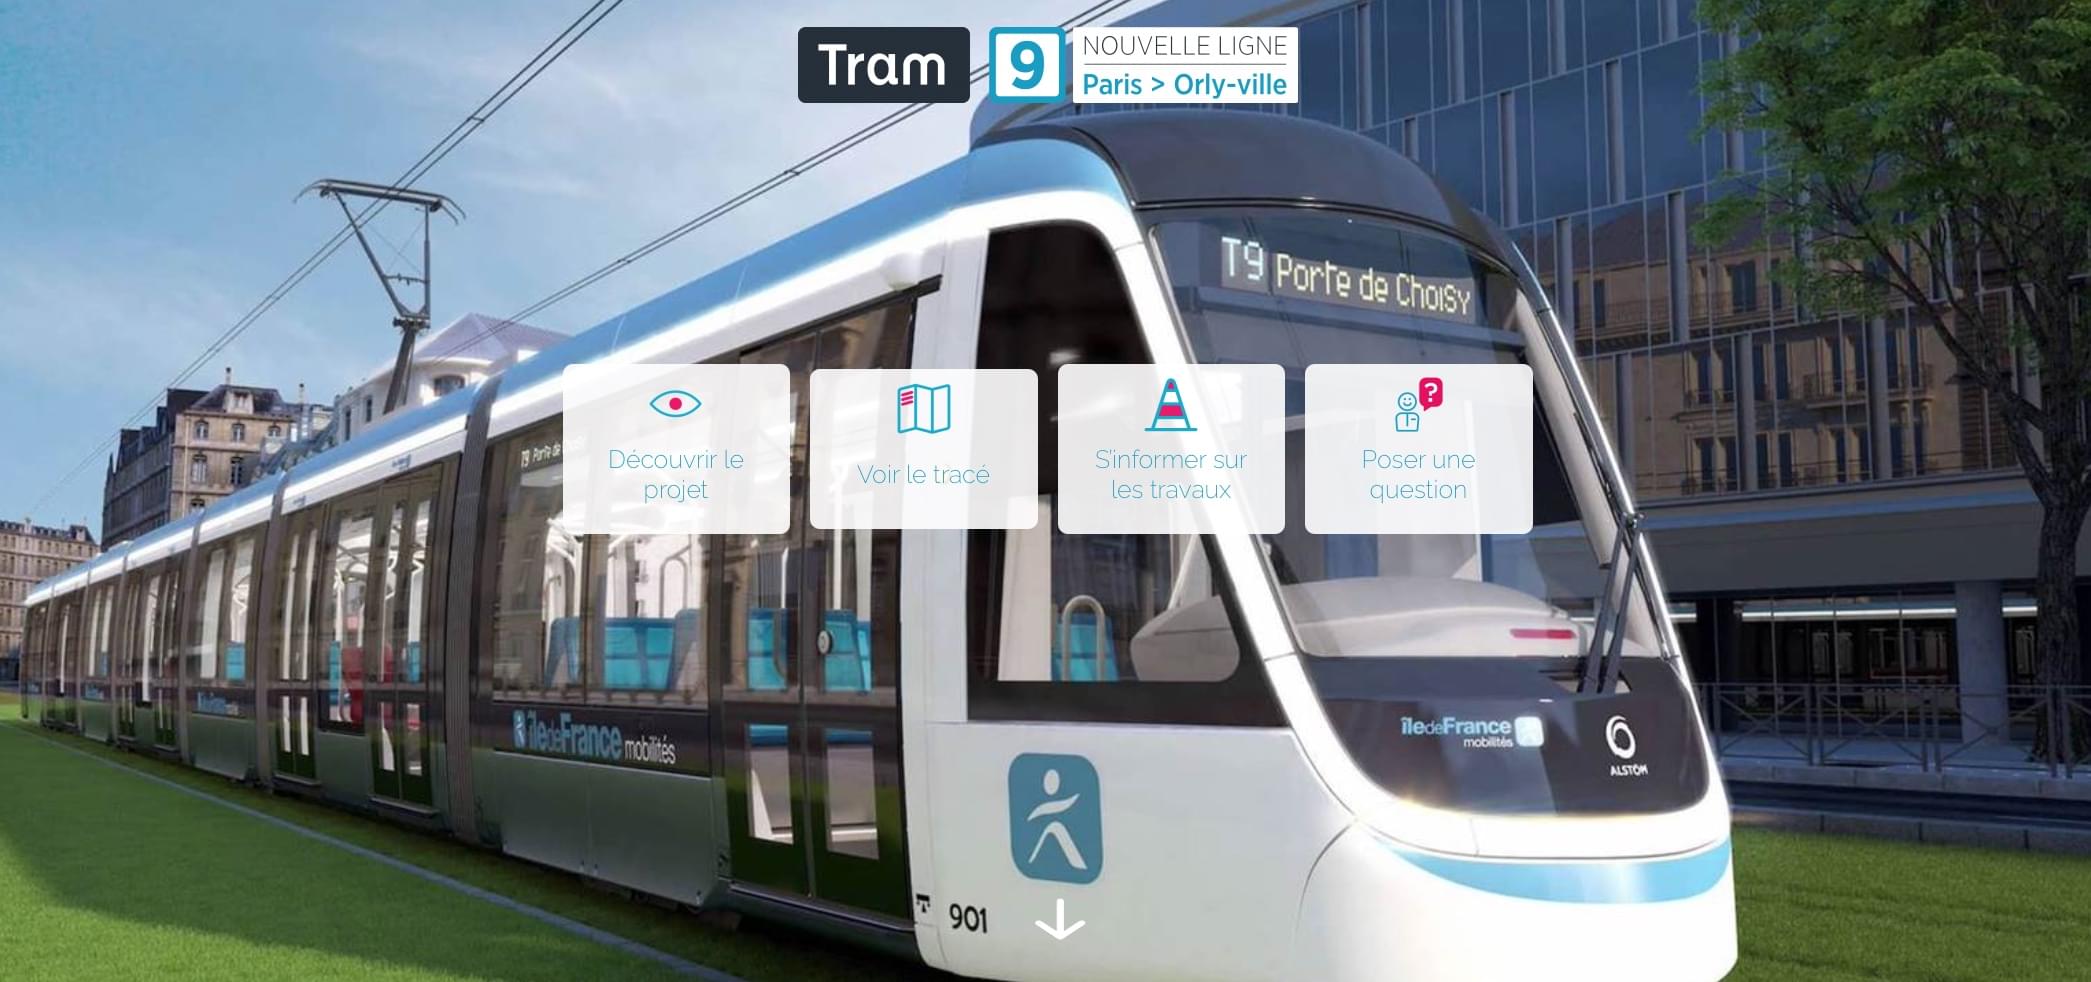 Tram T9 IDFM tram lumière avocat référence charrel